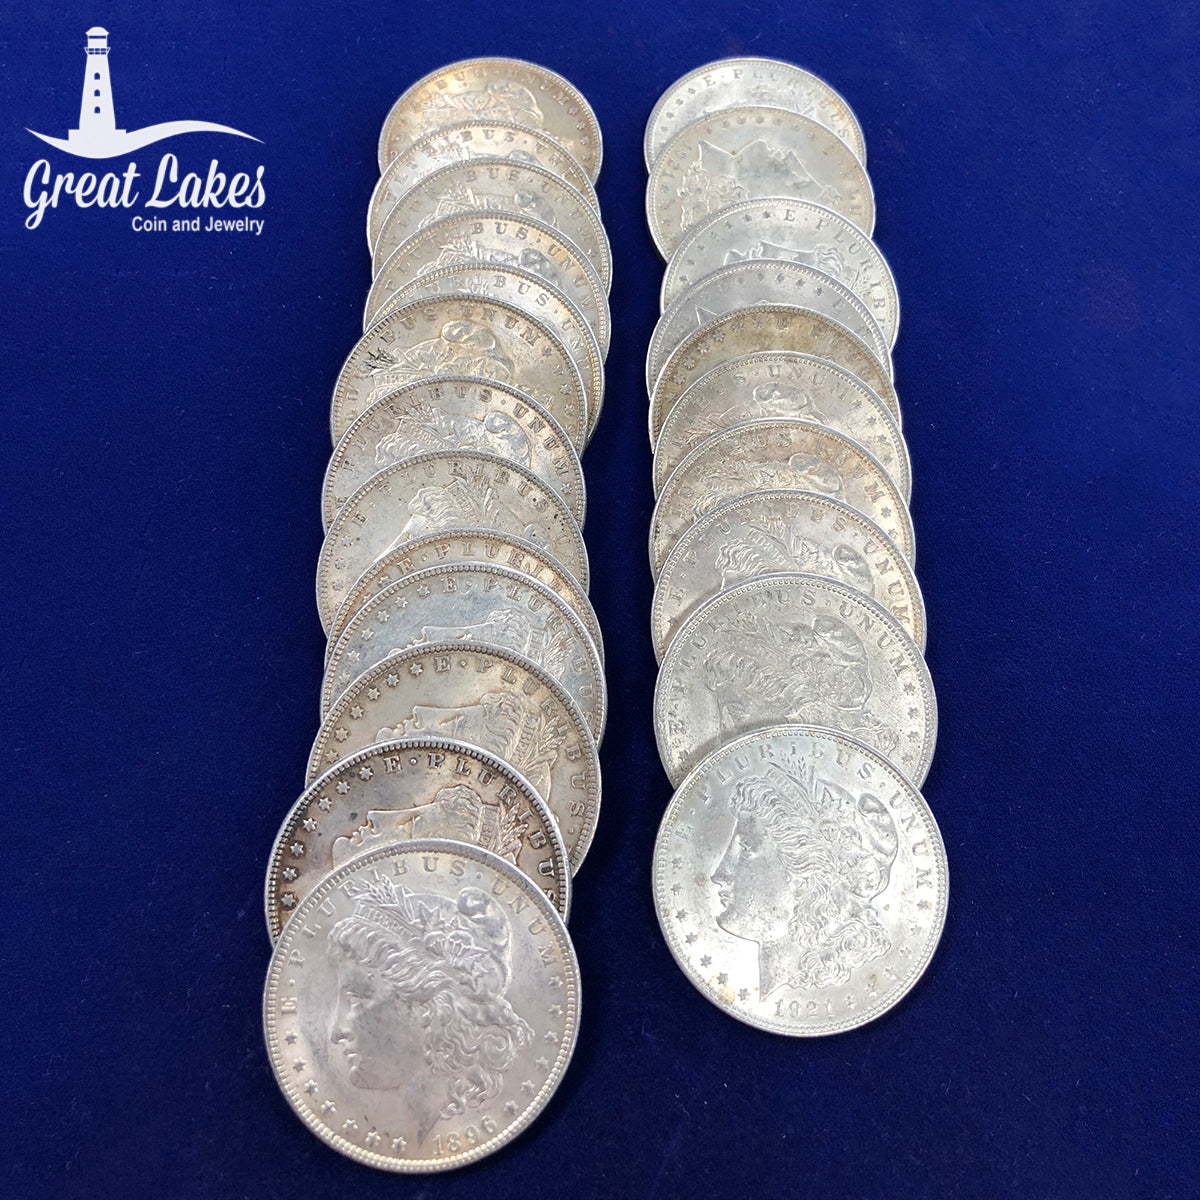 Lot of 23 Morgan Silver Dollars 13 AU/BU pre 21 and 10 AU/BU 1921